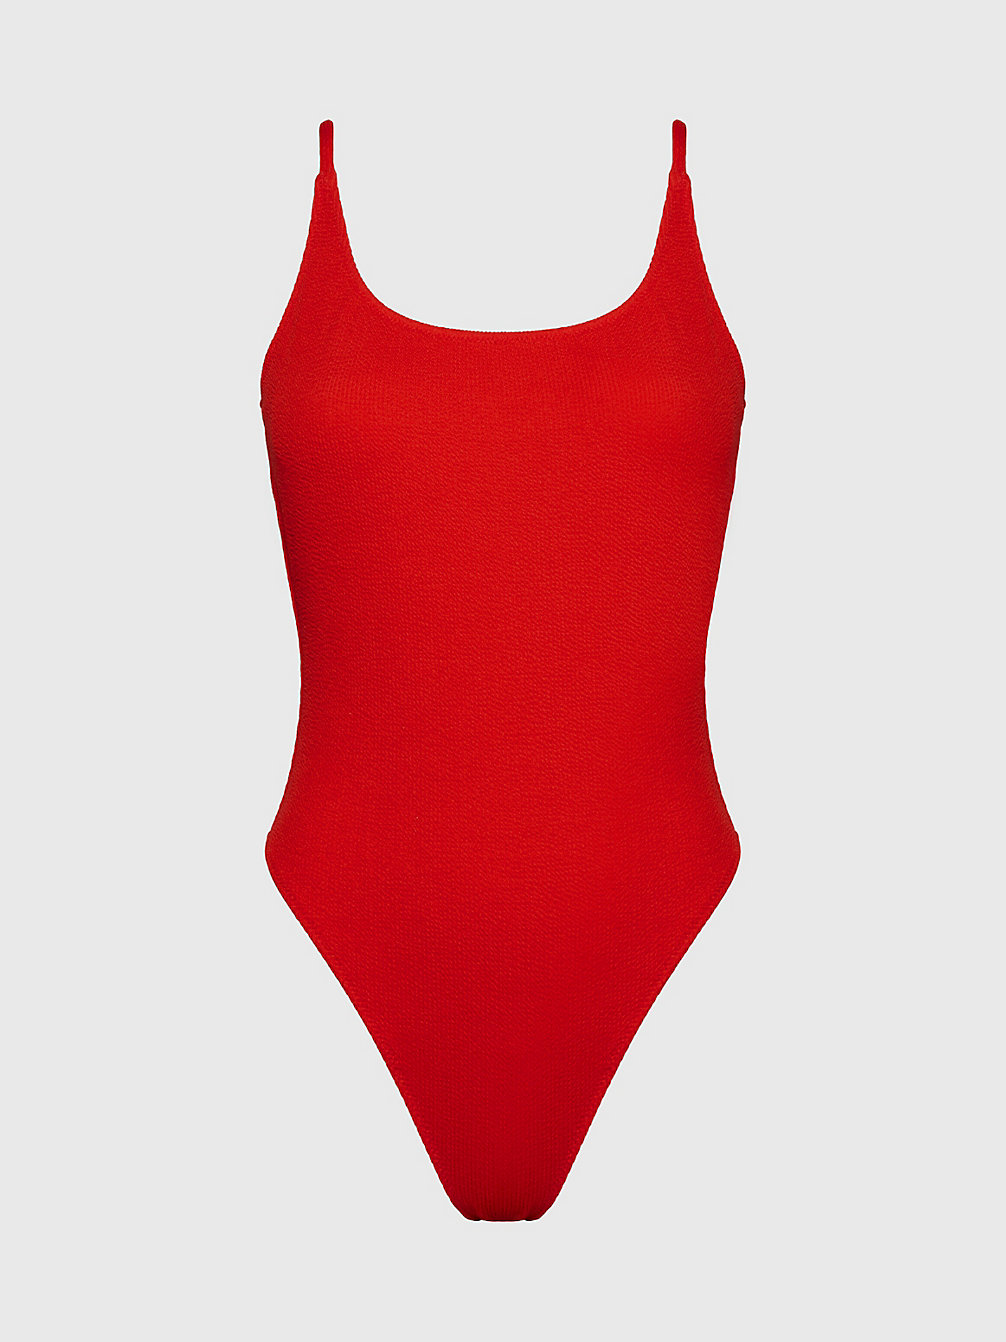 CAJUN RED Scoop Back Swimsuit - CK Texture undefined women Calvin Klein